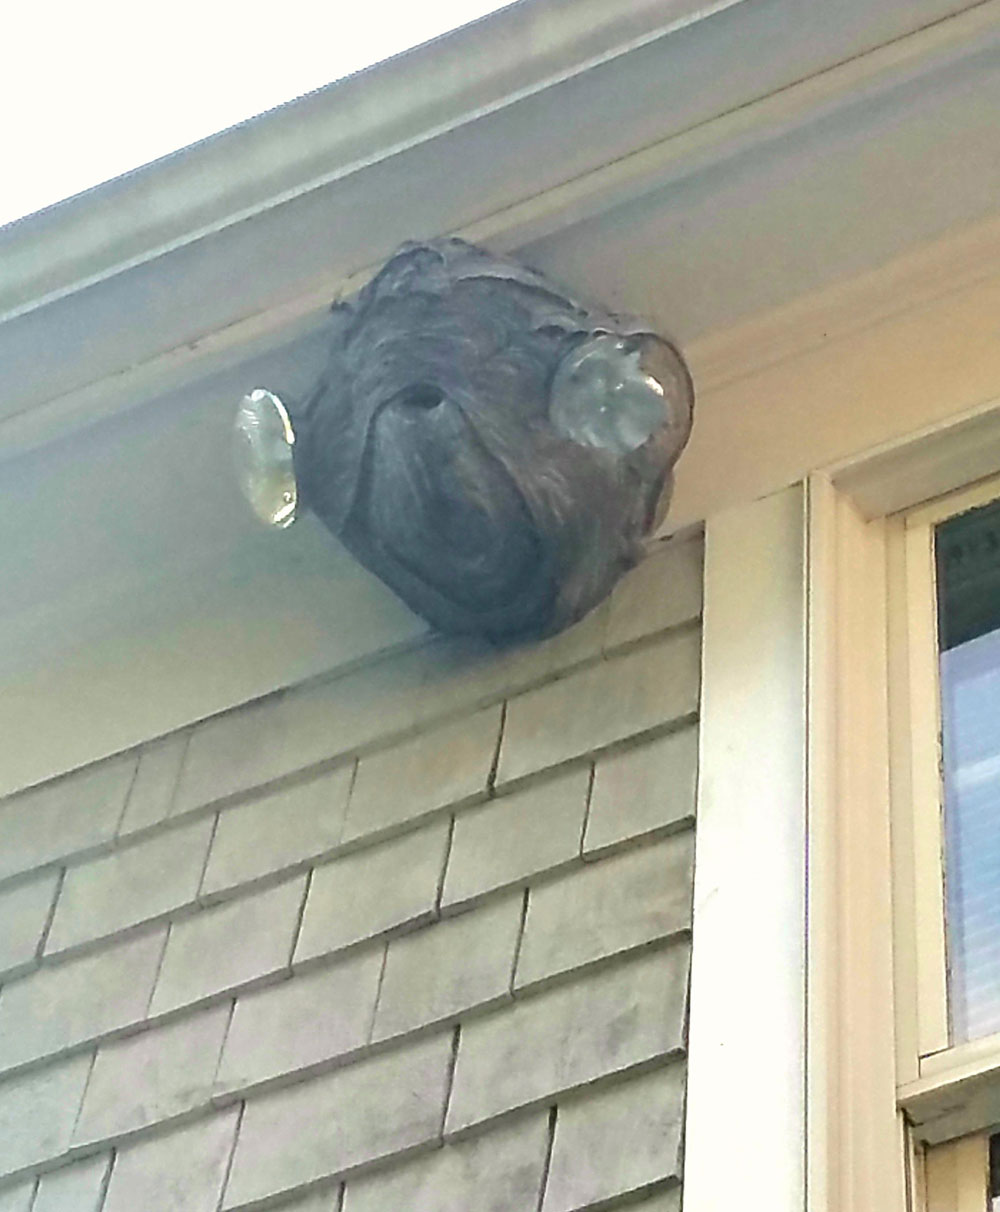 The hornet's nest near my roof looks like Admiral Ackbar